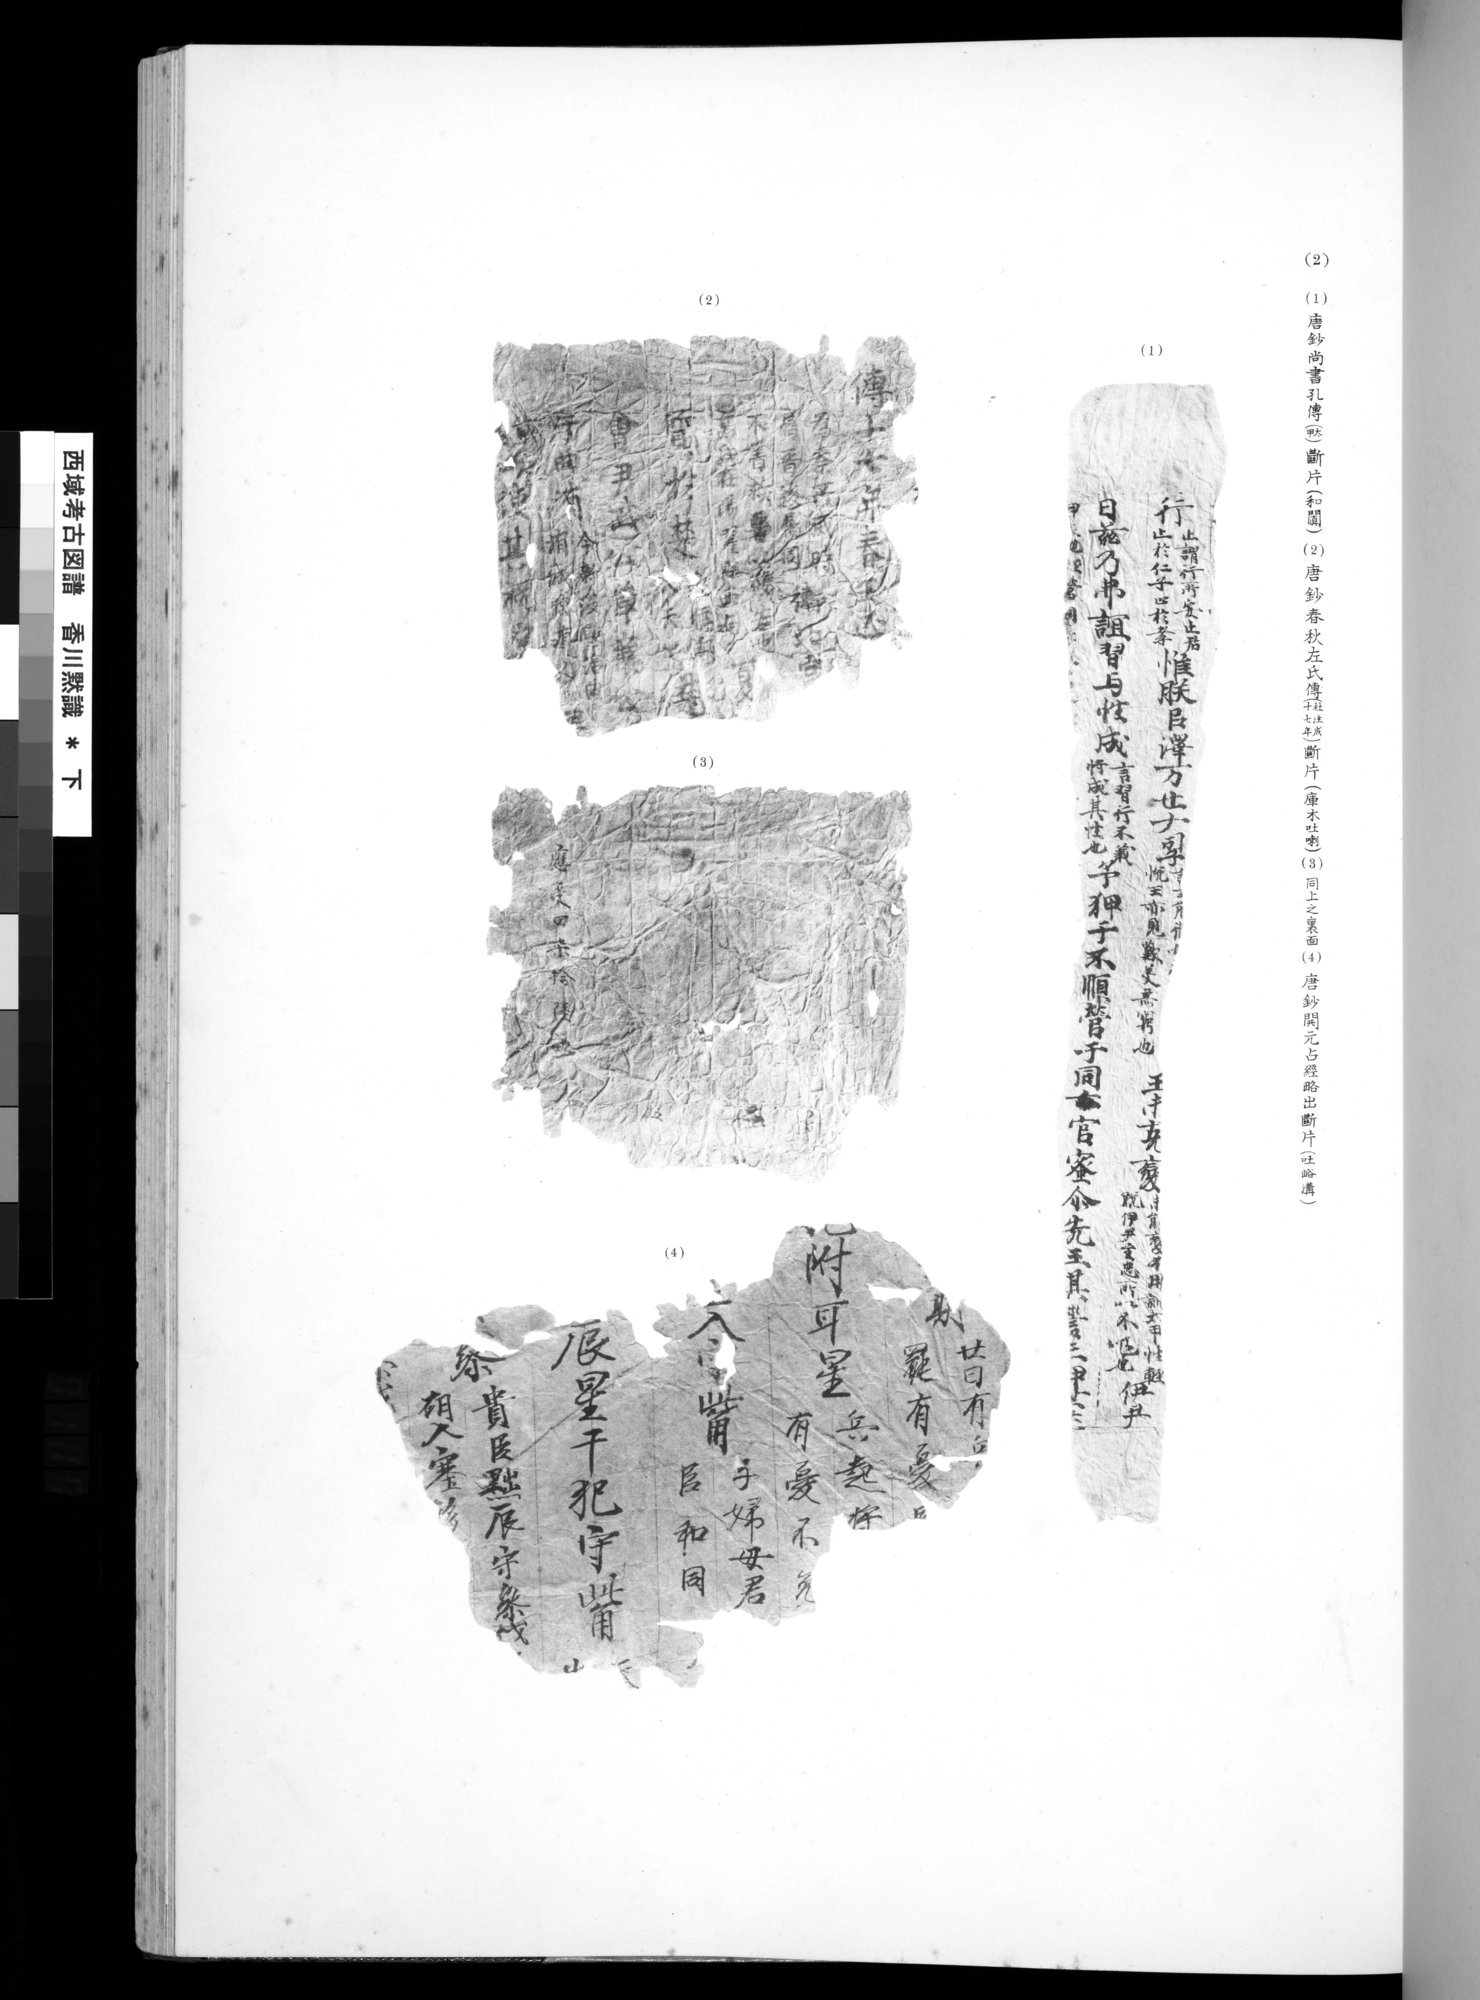 西域考古図譜 : vol.2 / Page 233 (Grayscale High Resolution Image)